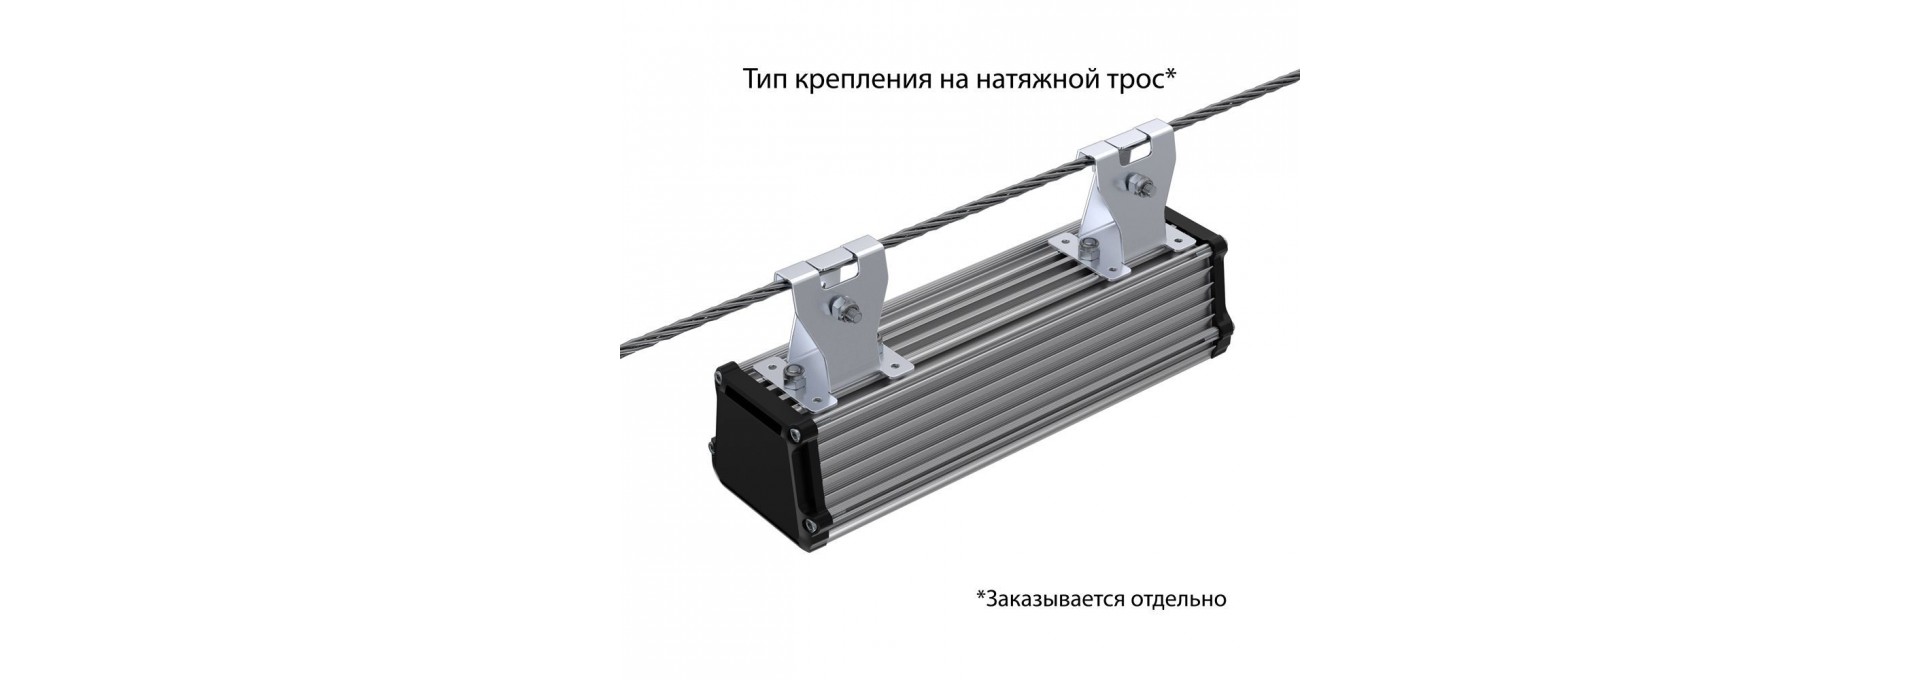 Т-Линия v2.0 10 250мм Эко 12-24V AC/DC 5000К Микропризма